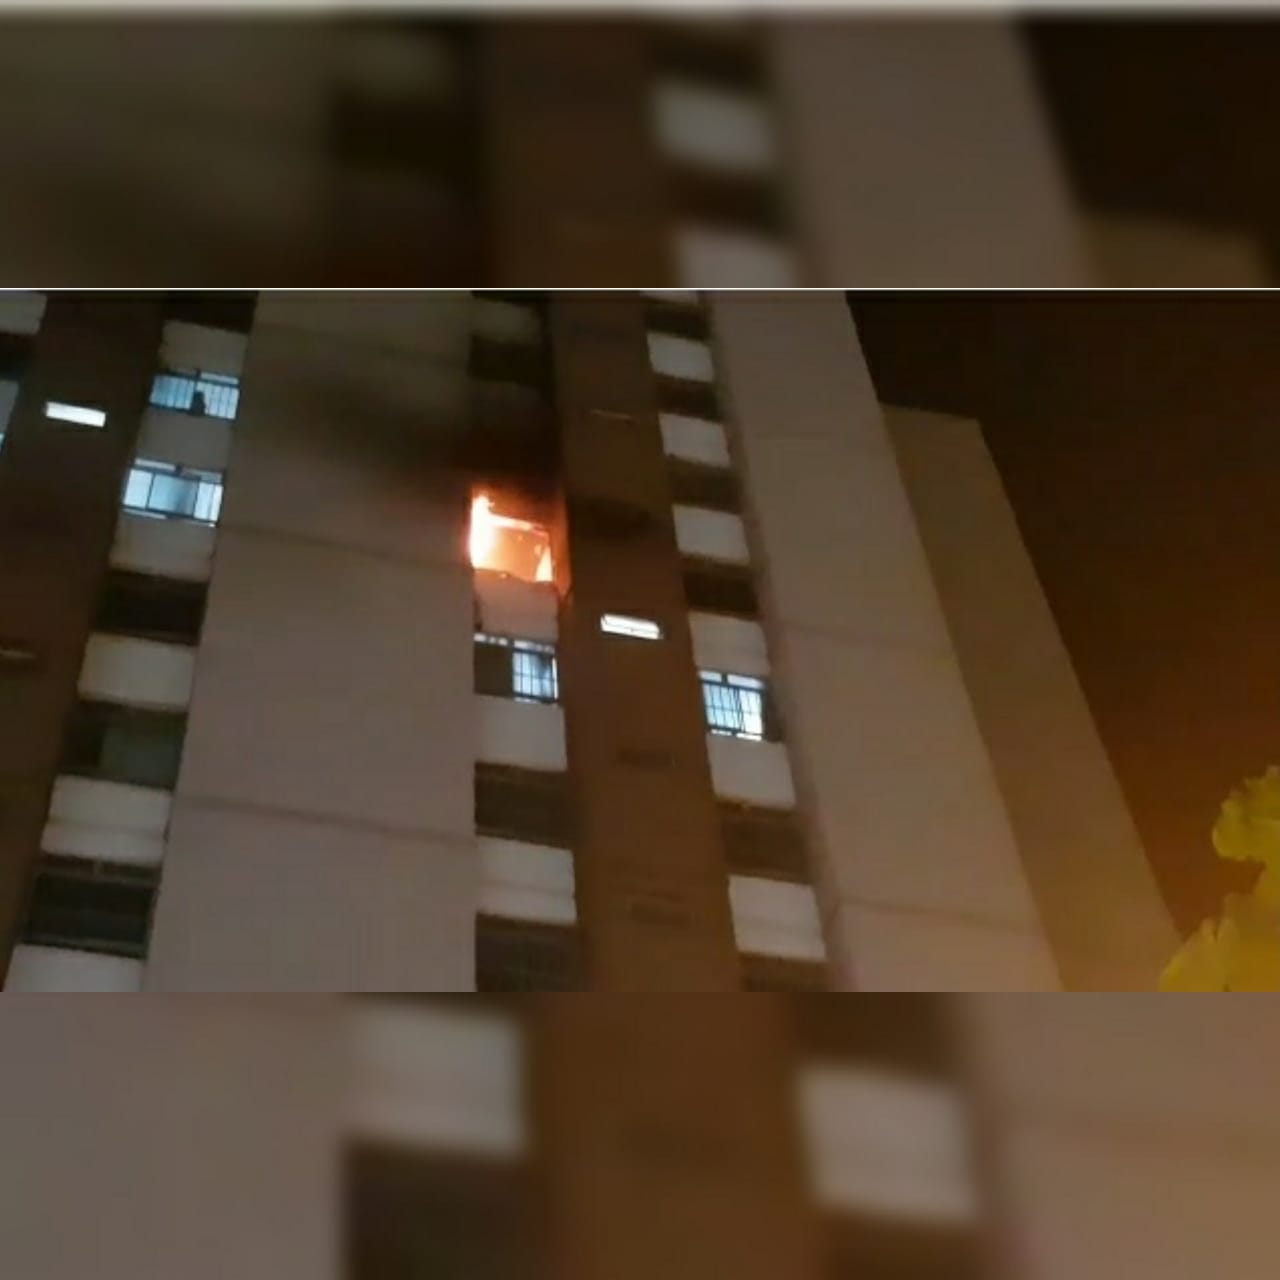 Um incêndio residencial deixou um apartamento no Jardim América, em Goiânia, parcialmente destruído.Ninguém ficou ferido. (Foto: Divulgação/Corpo de Bombeiros)